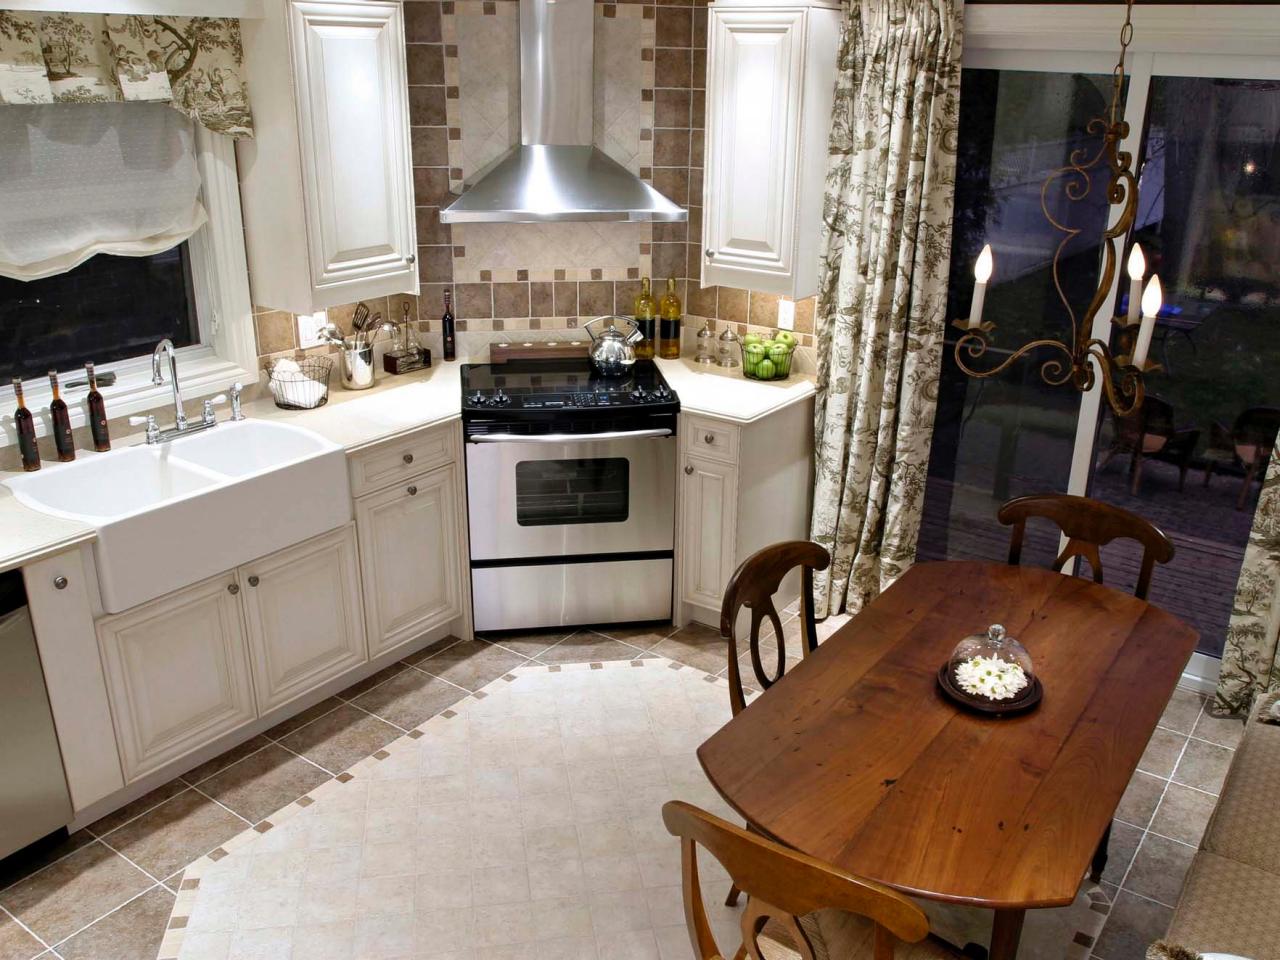 Kitchen Layout Templates: 6 Different Designs  HGTV